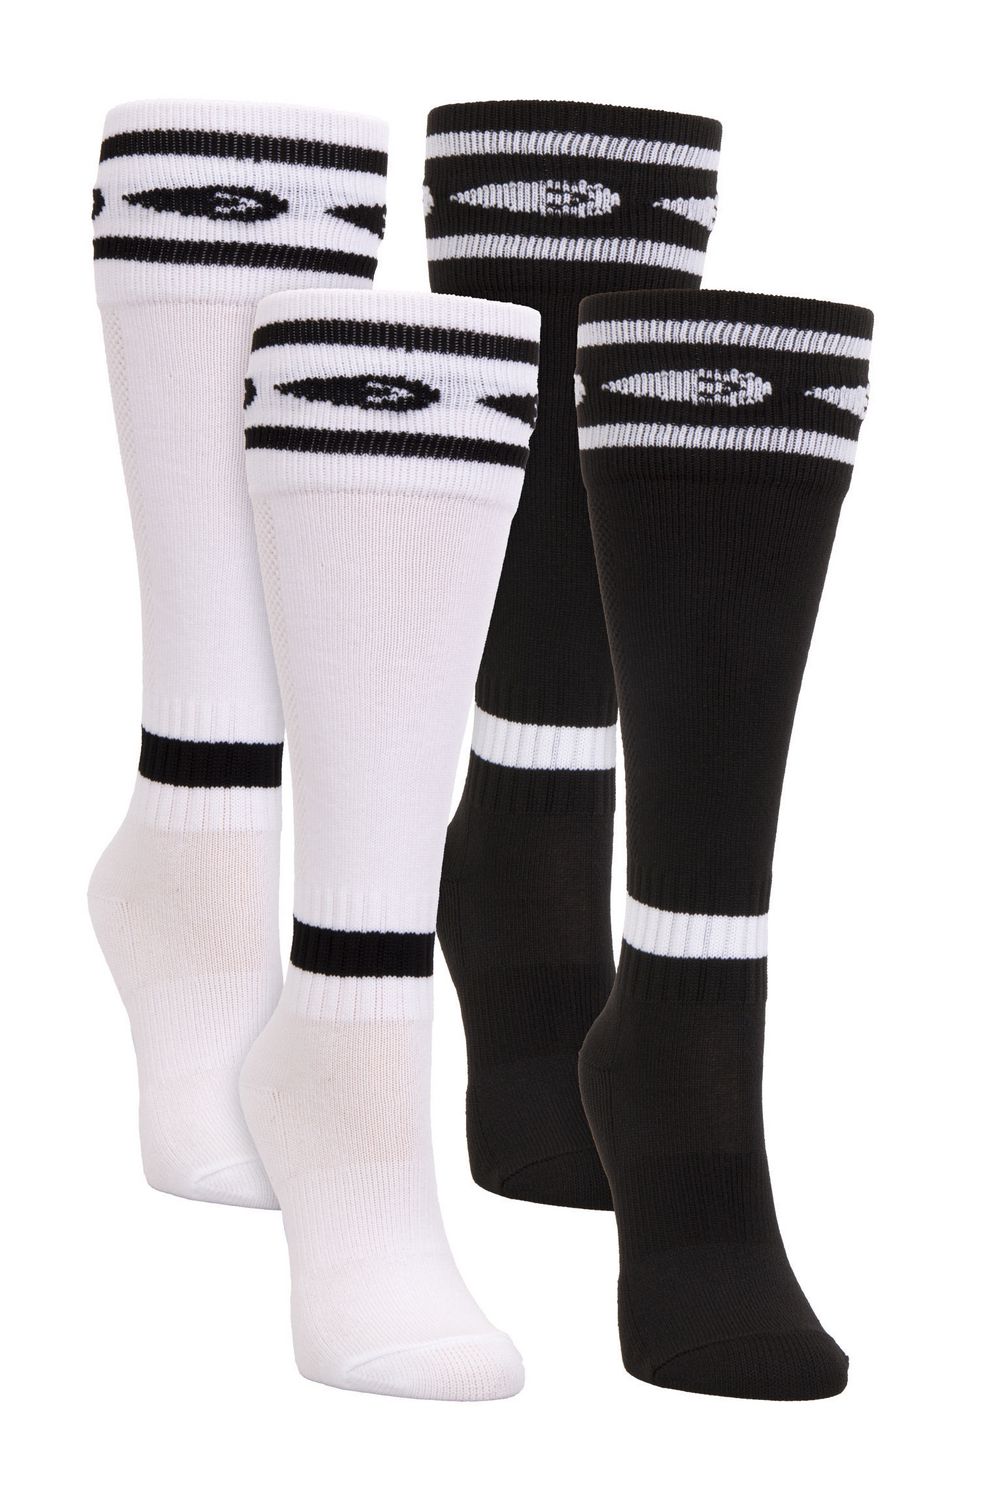 Mitre Soccer Socks Black & White Stripe Black Top 